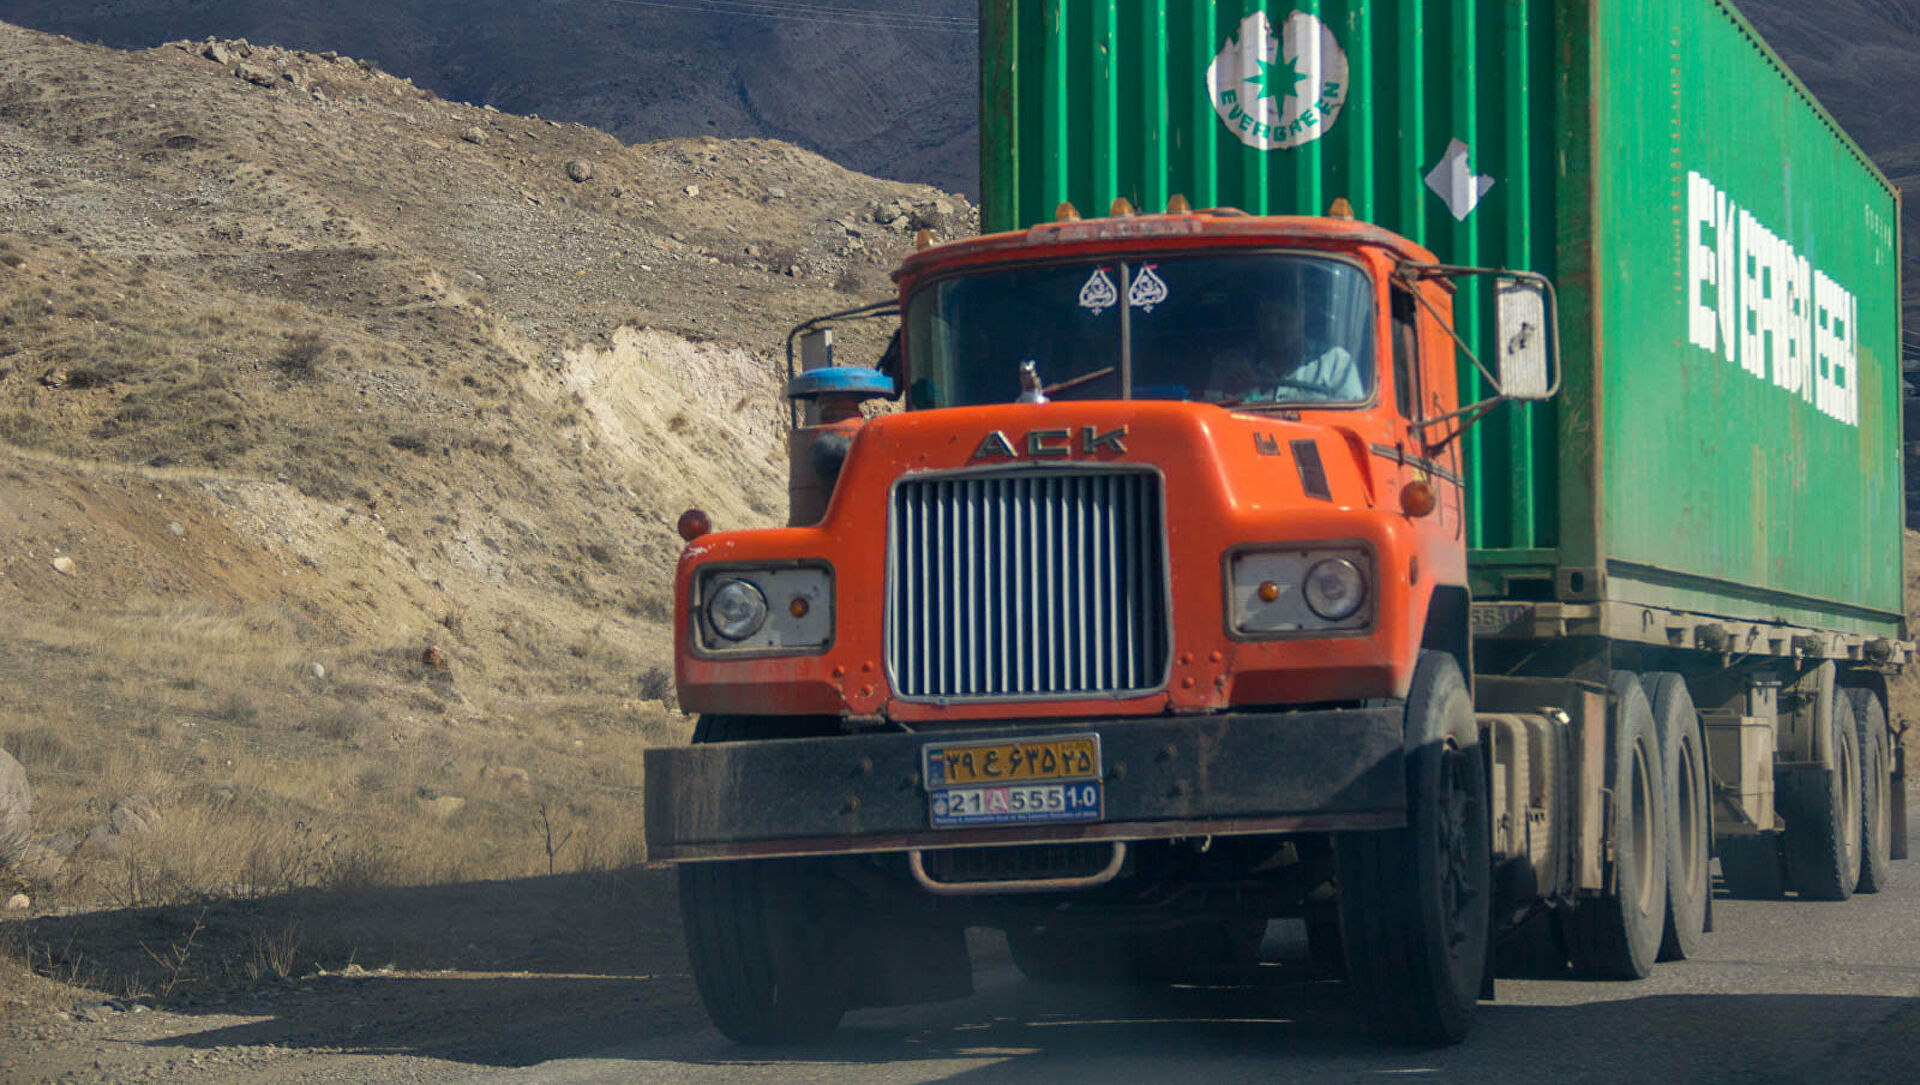 Իրան-Ադրբեջան սահմանի ադրբեջանական կողմի մաքսակետում Իրանից ՌԴ բեռնափոխադրումներ իրականացնող ավտոմեքենաները խցանման մեջ են